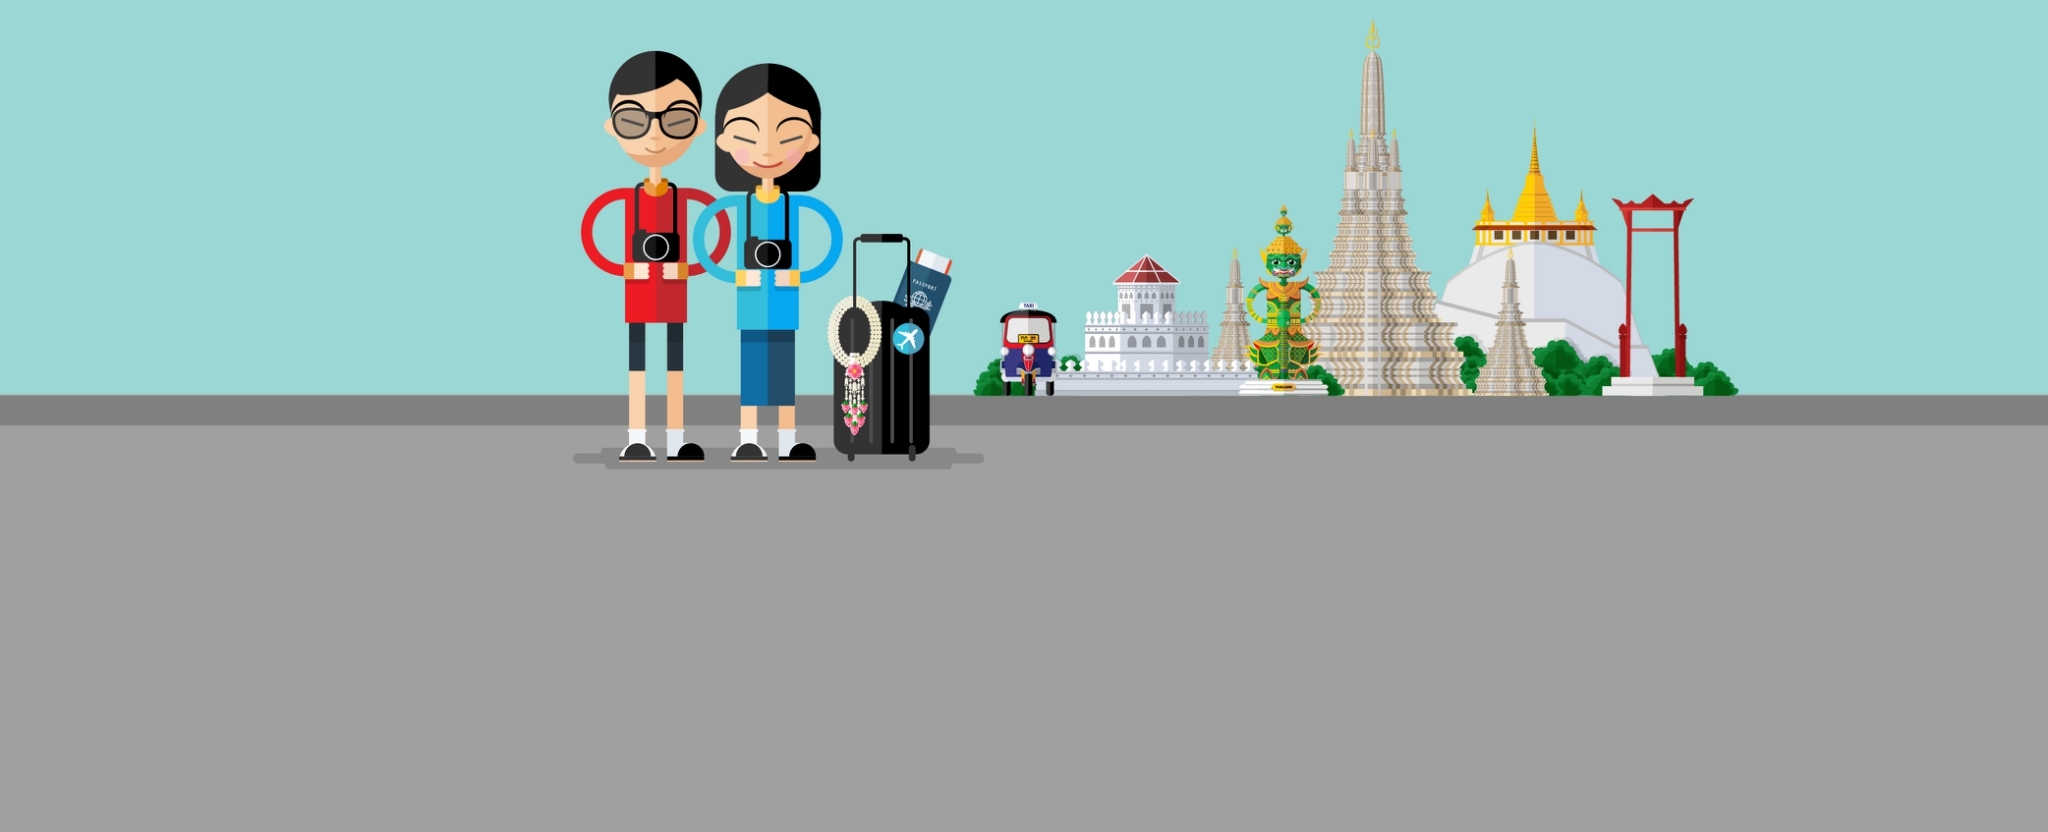 กระทรวงการท่องเที่ยวฯ ชง ครม. 5 มาตรการพยุงท่องเที่ยวไทย